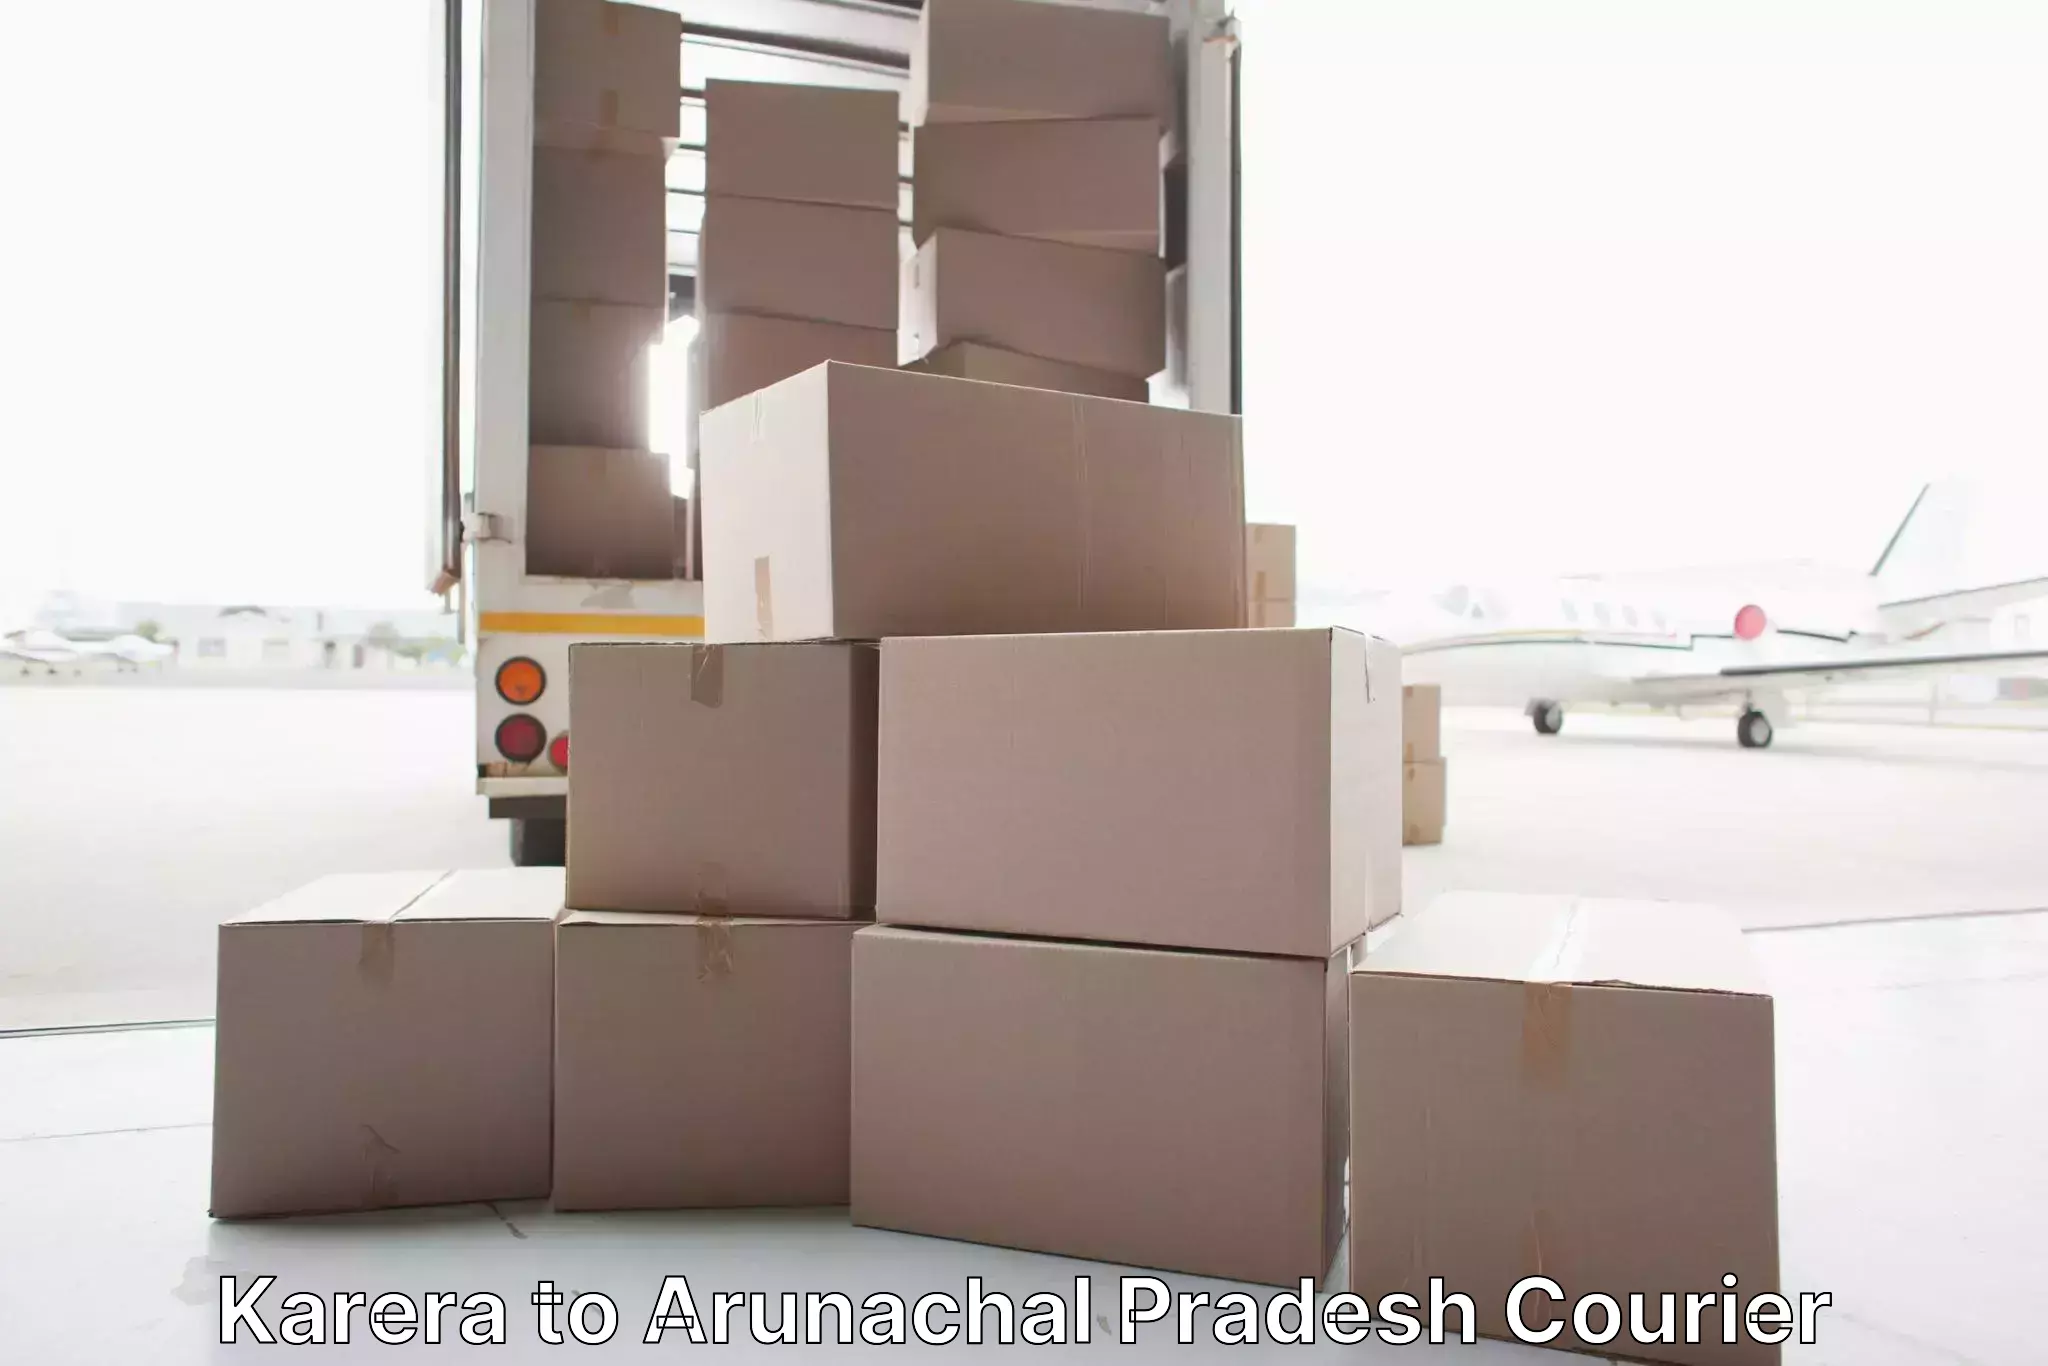 Professional movers and packers Karera to Arunachal Pradesh